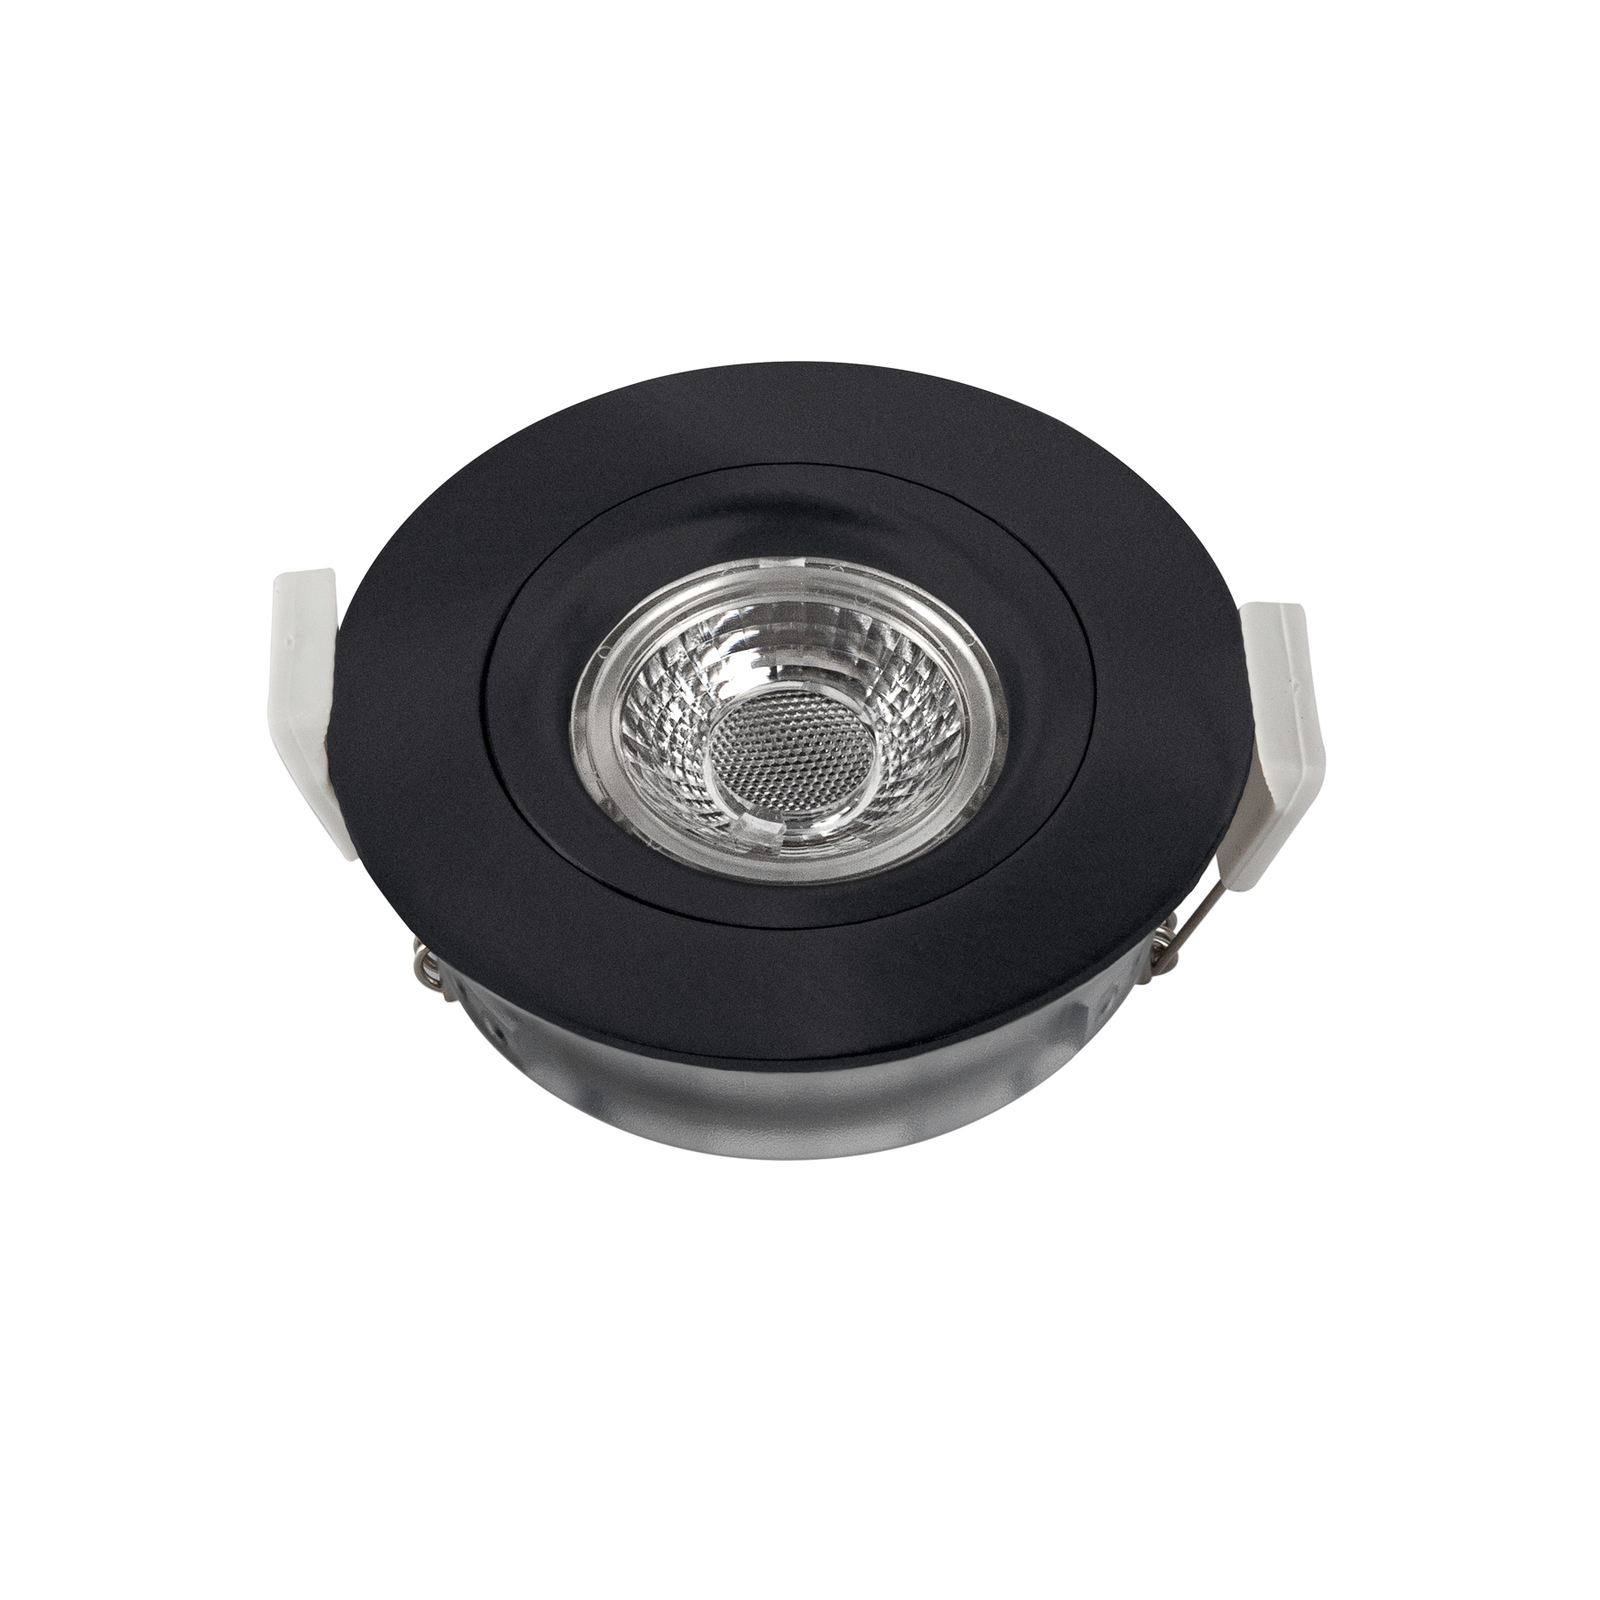 Downlight LED DL6809, okrągły, czarny